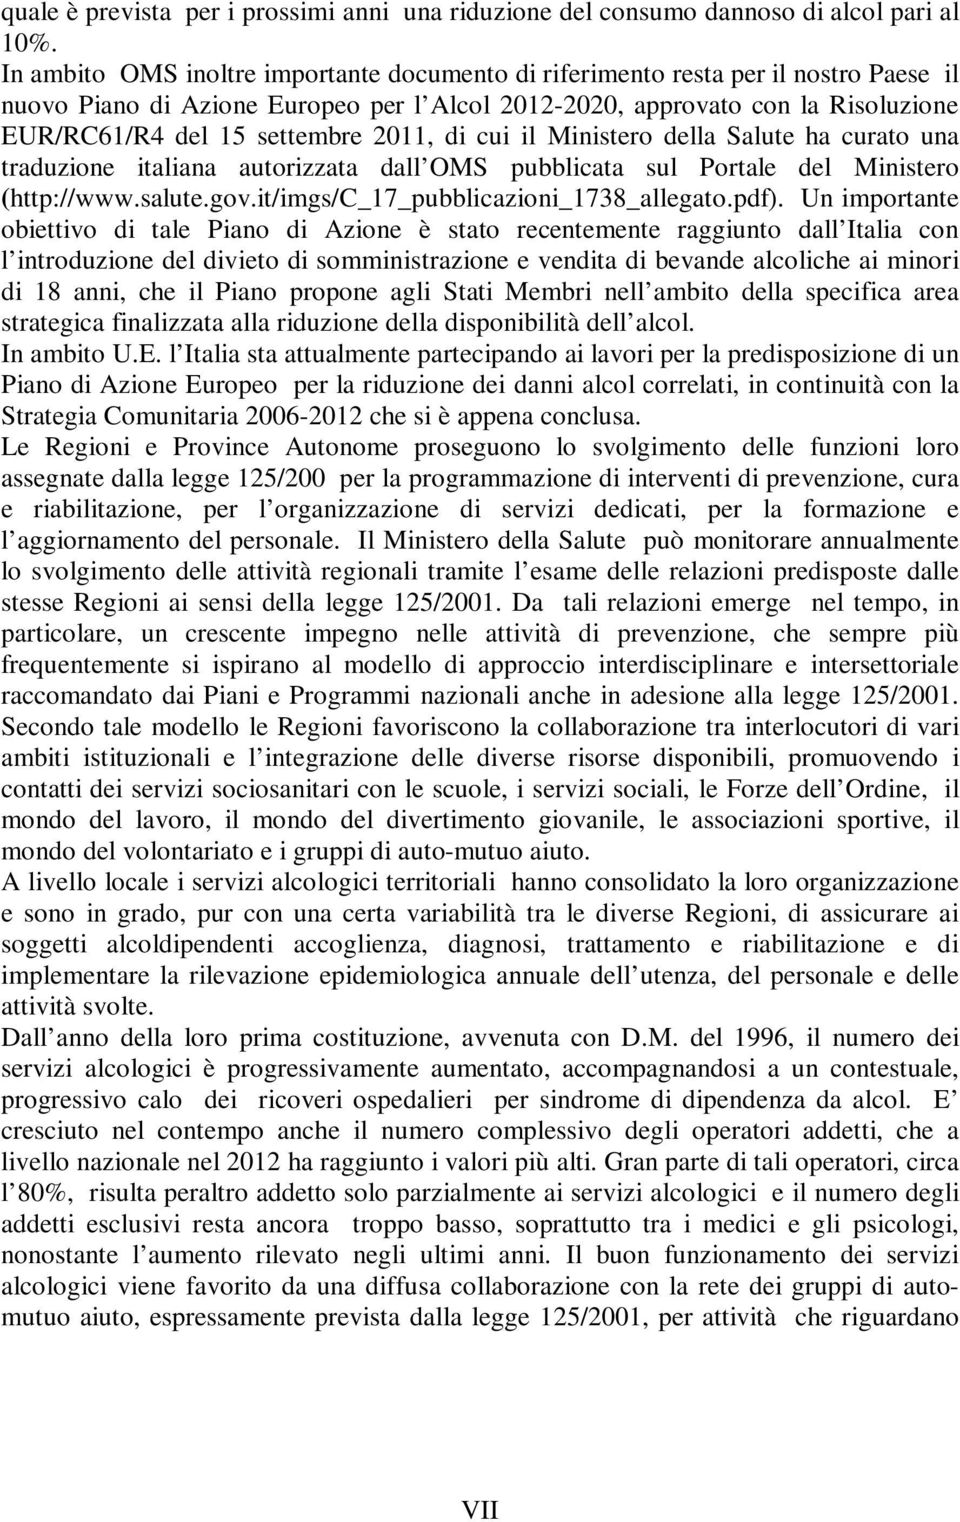 2011, di cui il Ministero della Salute ha curato una traduzione italiana autorizzata dall OMS pubblicata sul Portale del Ministero (http://www.salute.gov.it/imgs/c_17_pubblicazioni_1738_allegato.pdf).